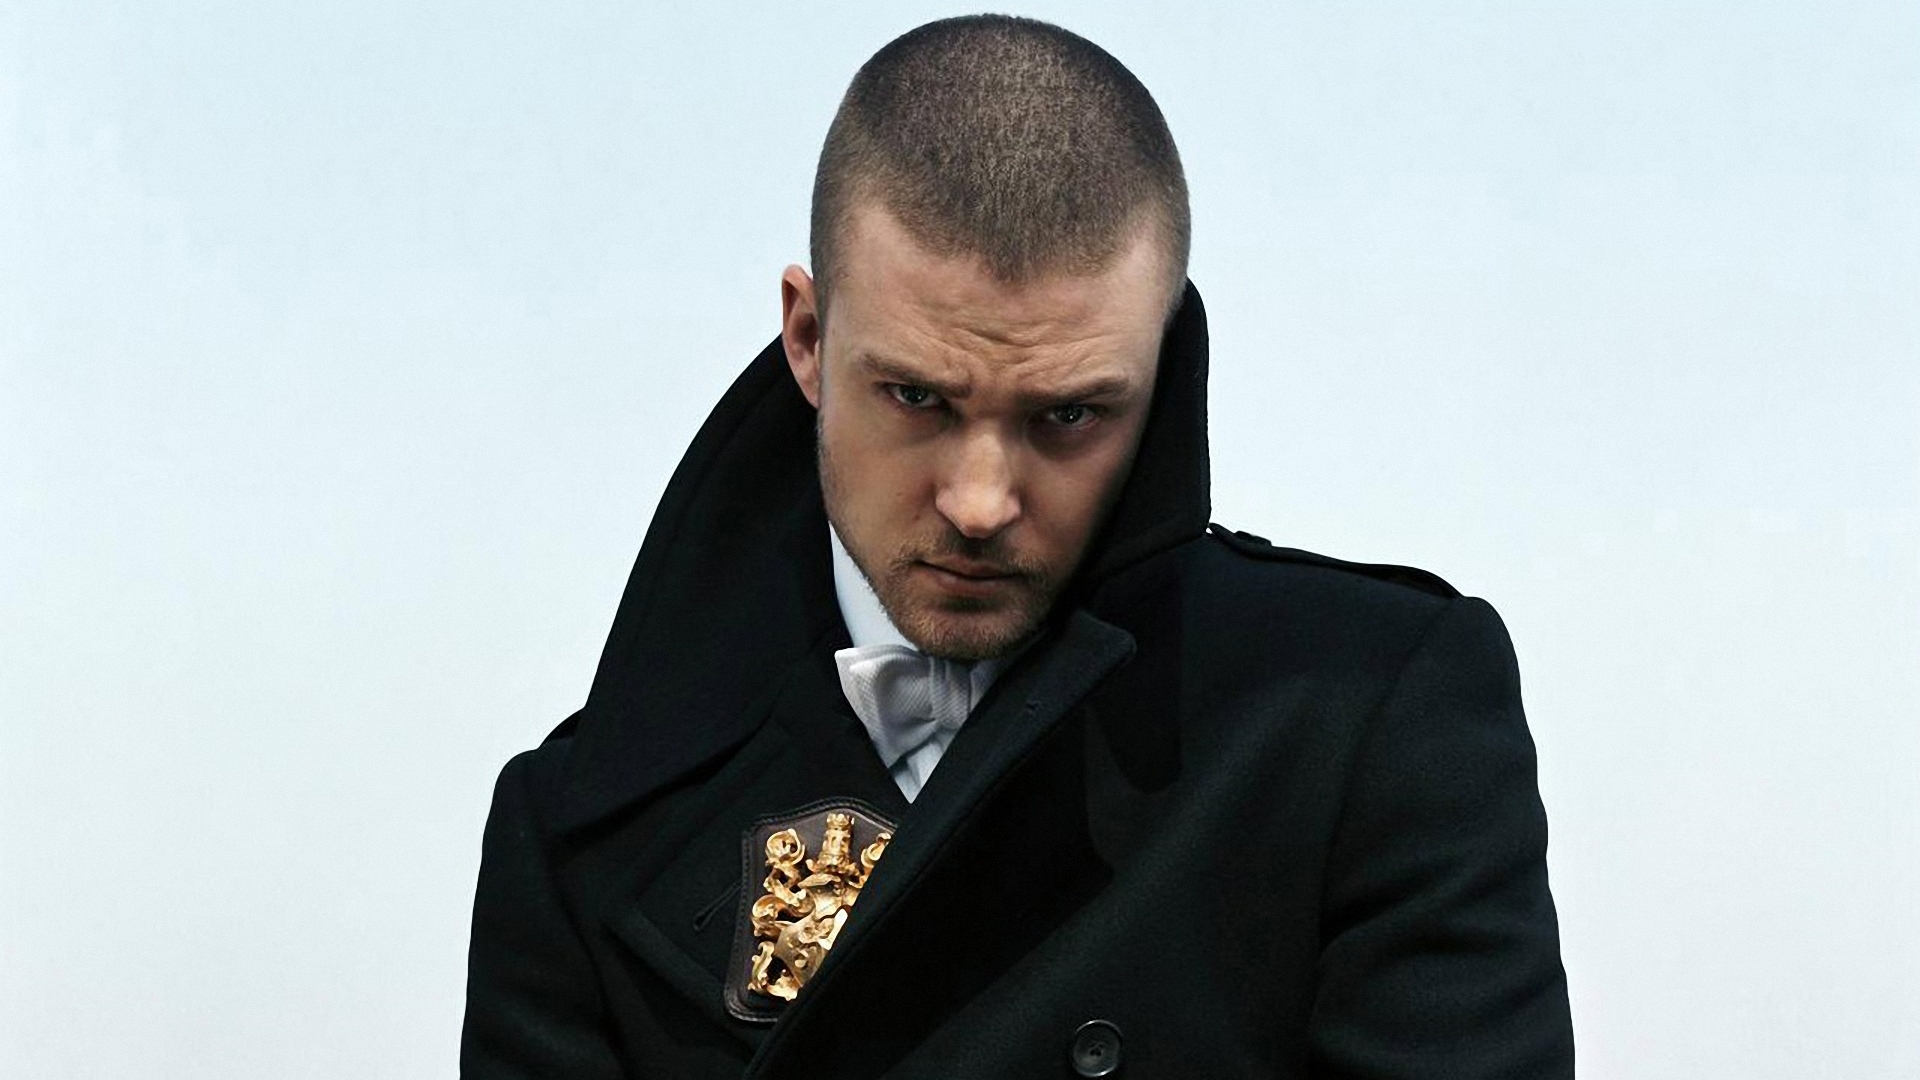 Justin Timberlake Wallpaper Pictures Image